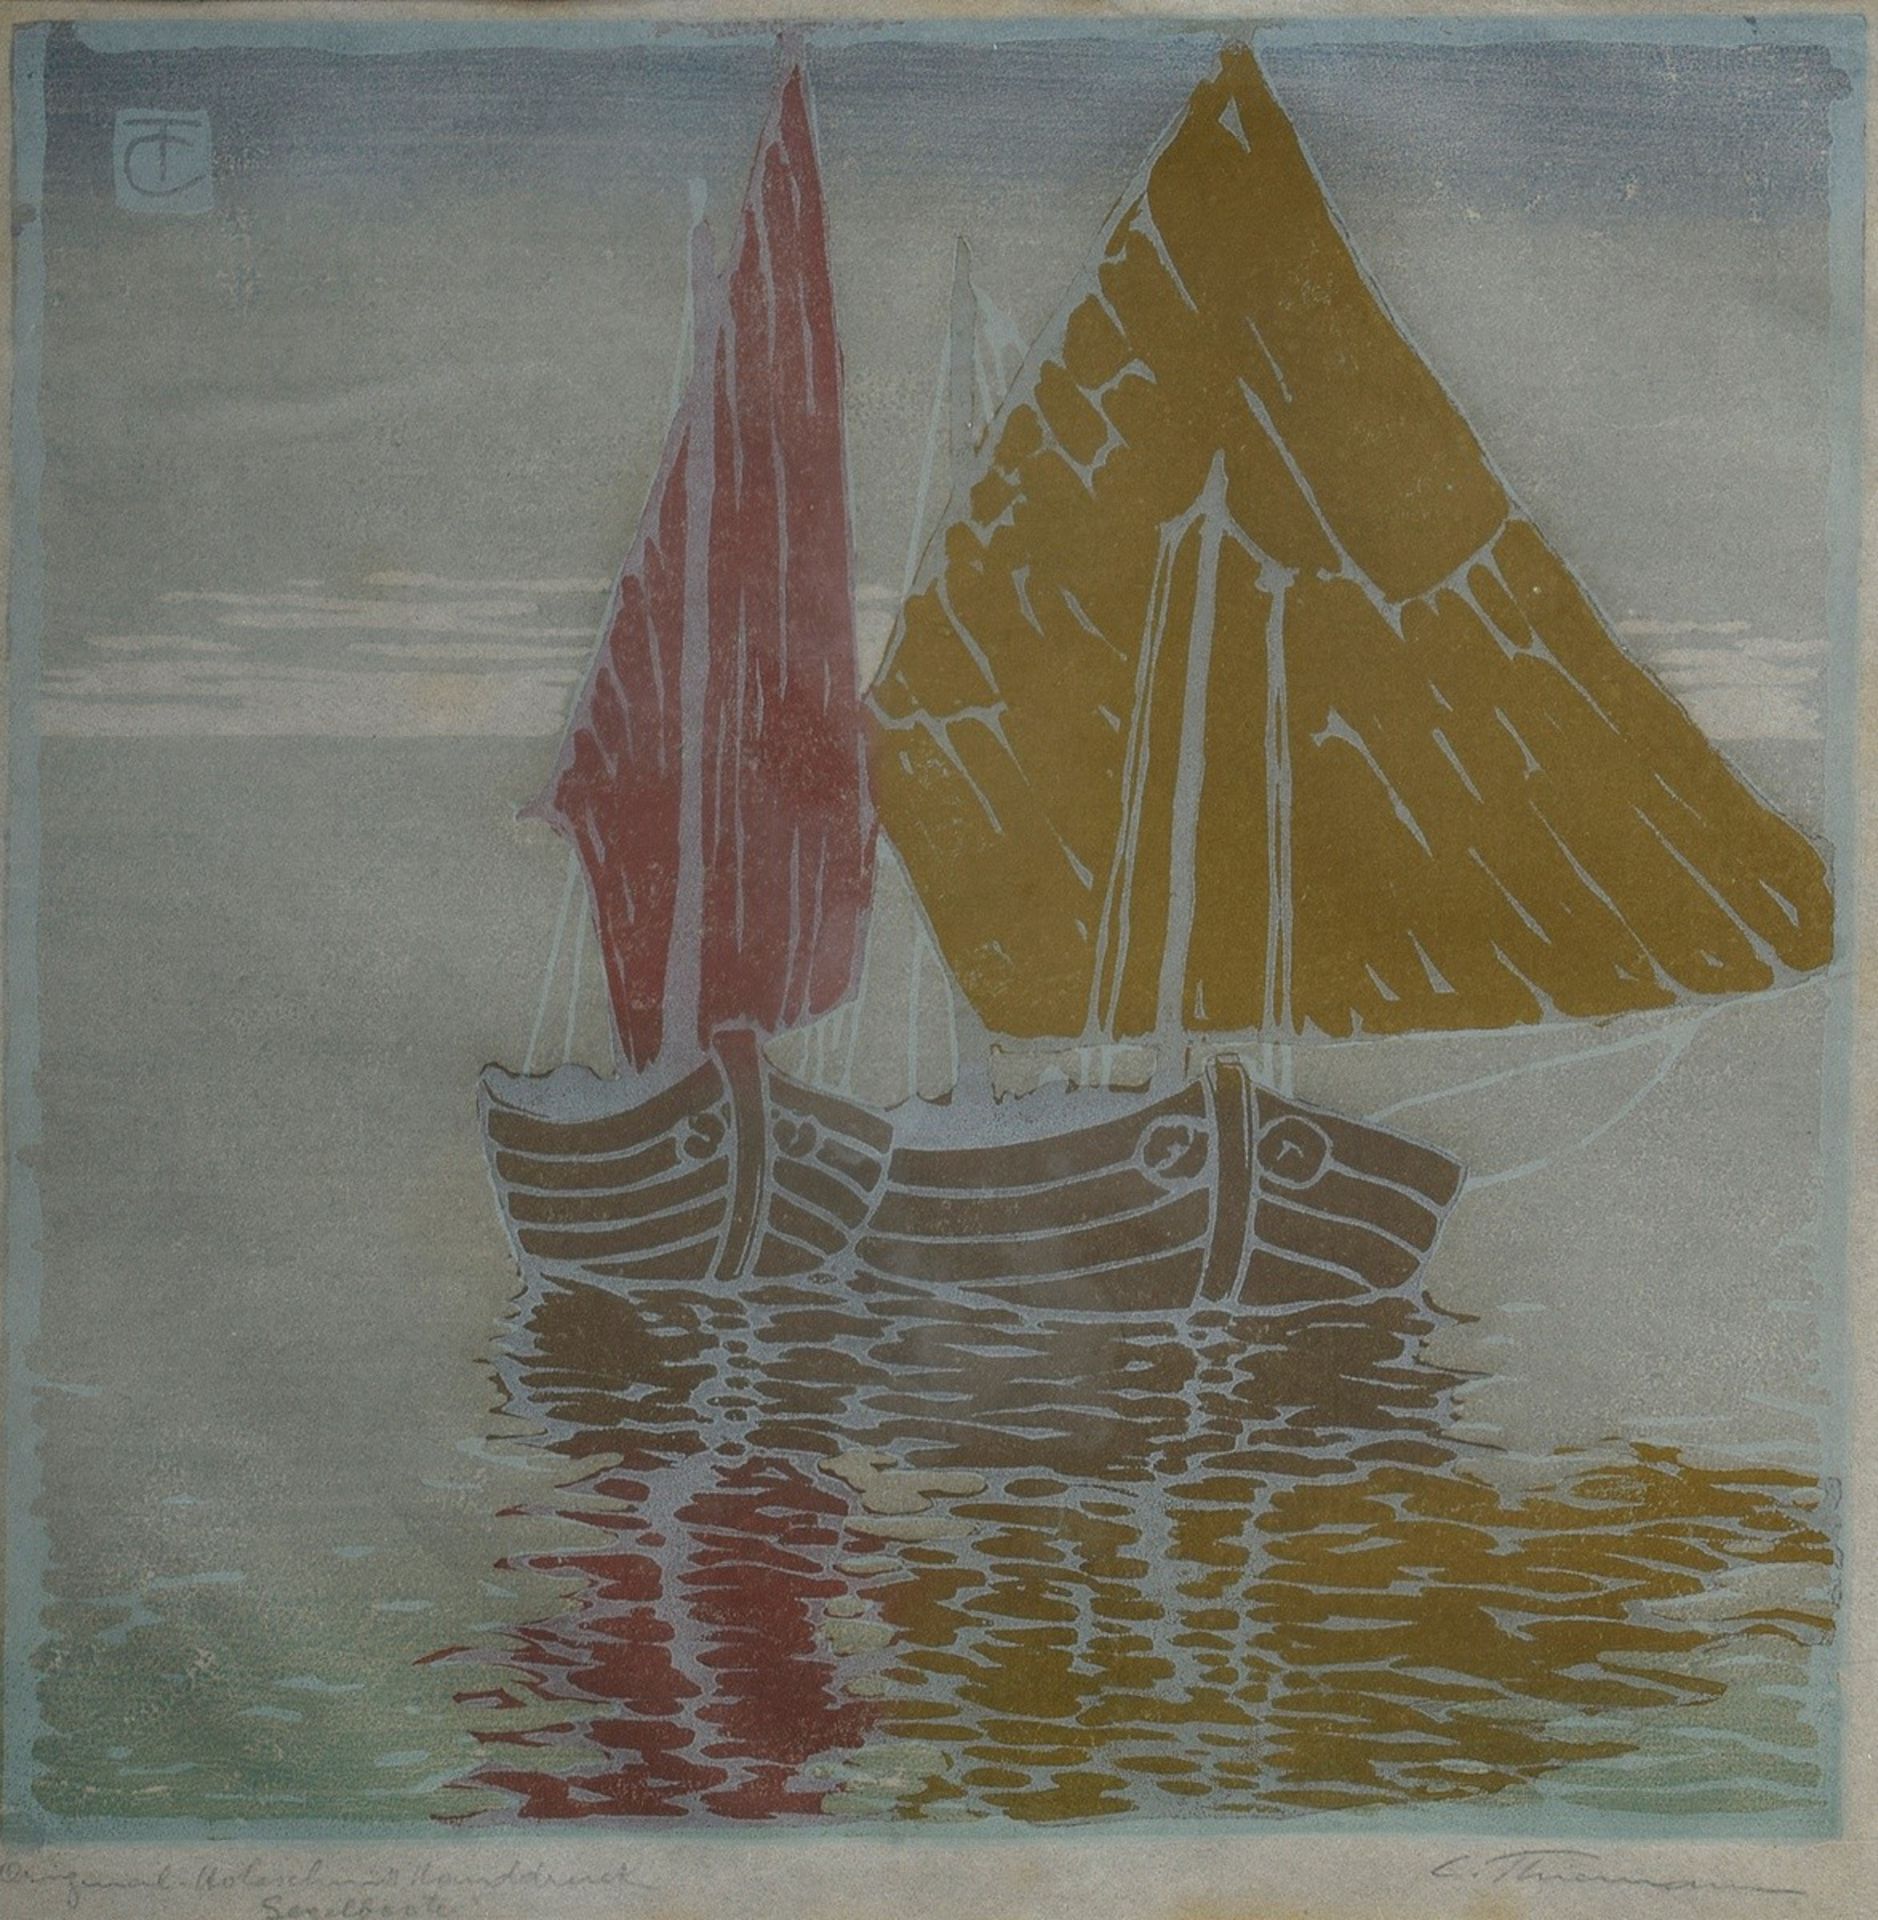 Thiemann, Carl Theodor (1881-1966) "Segelboote" | Thiemann, Carl Theodor (1881-1966) "Sailing Boat